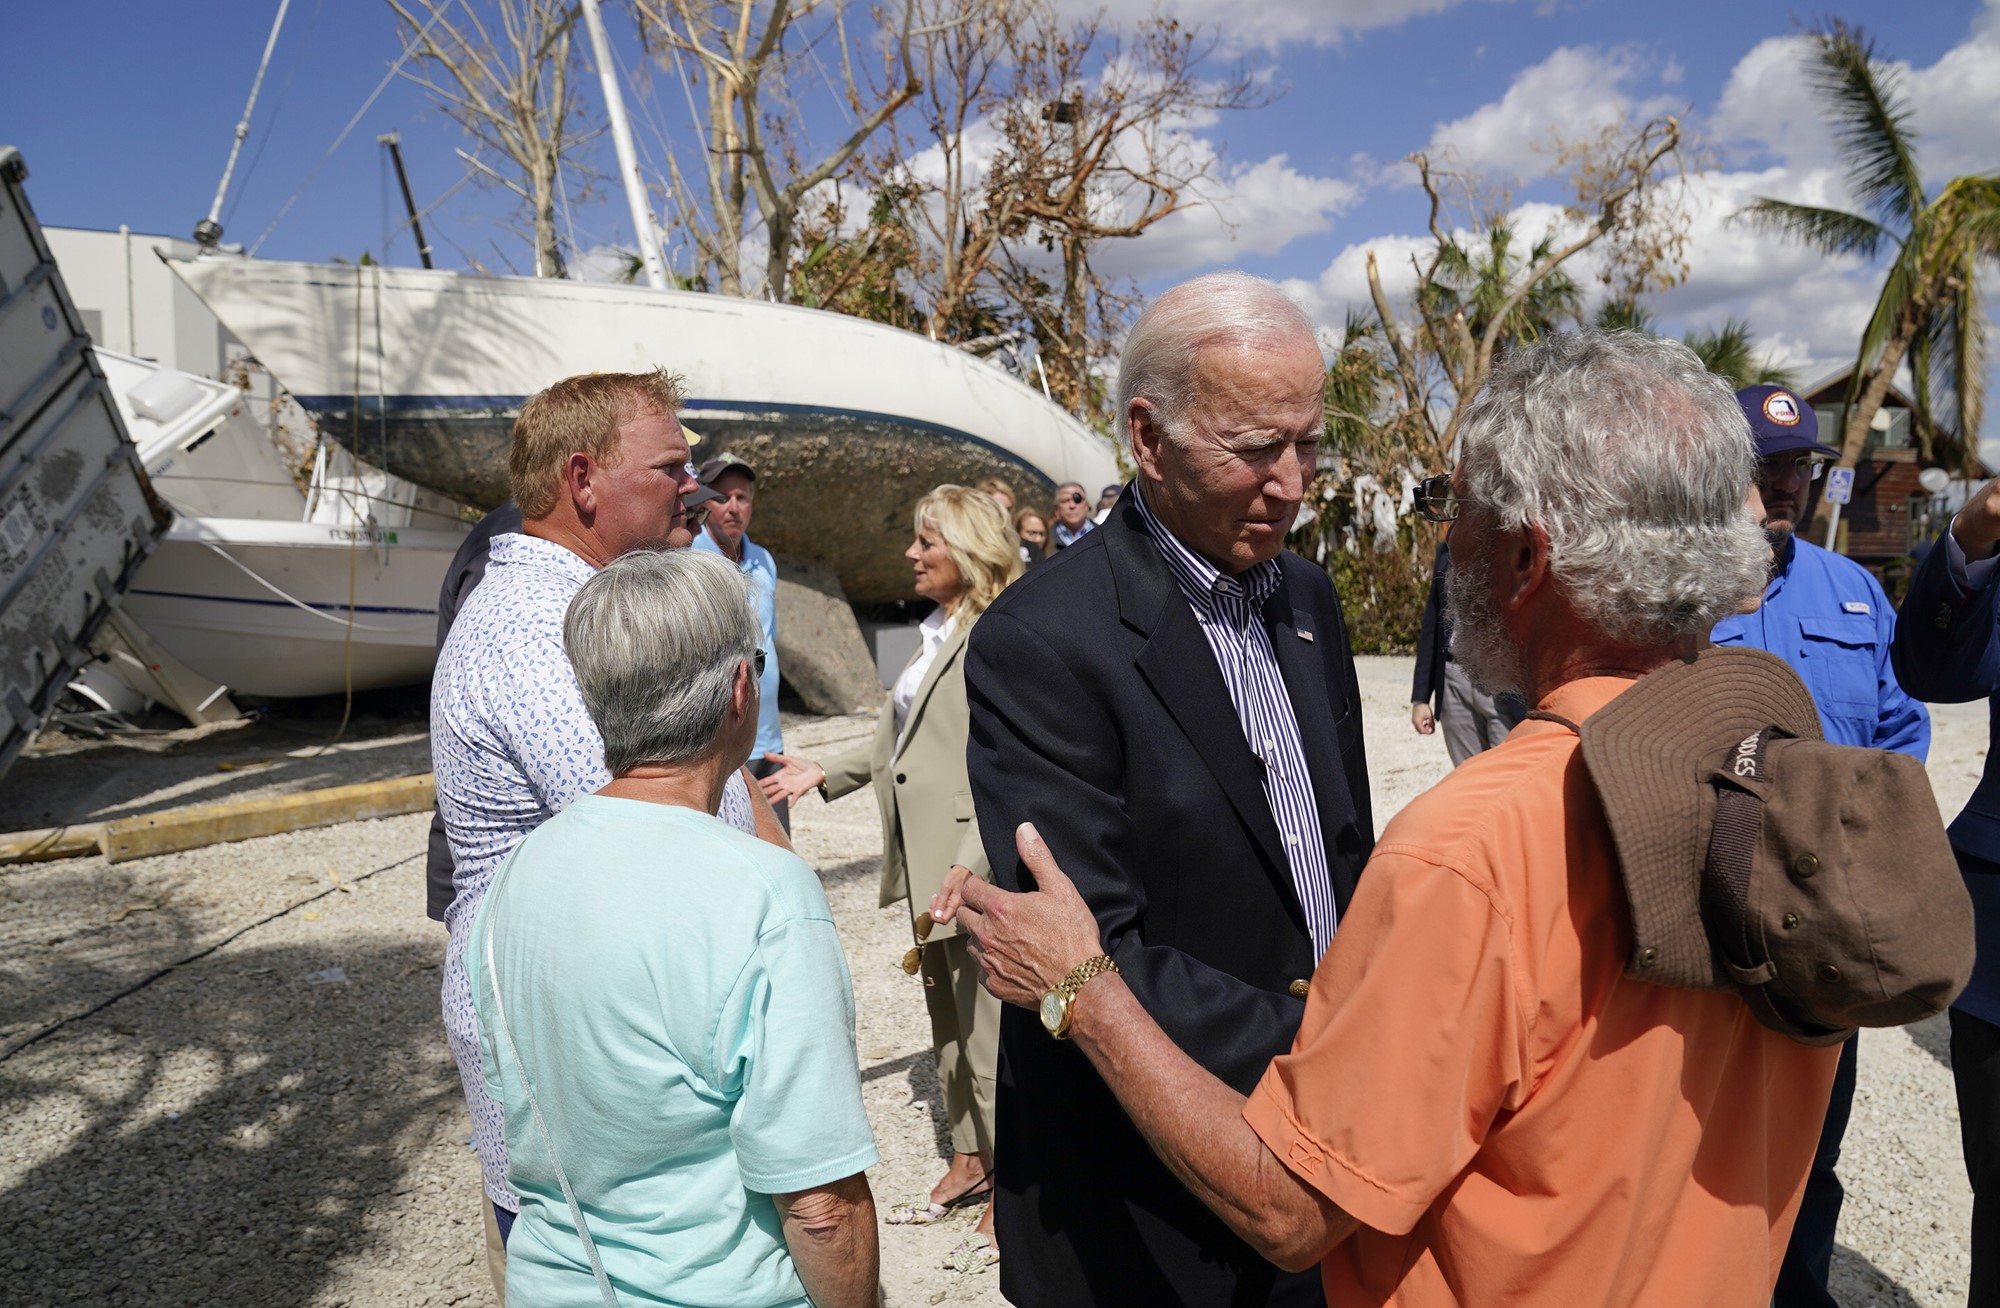 Biden shakes hands with locals.